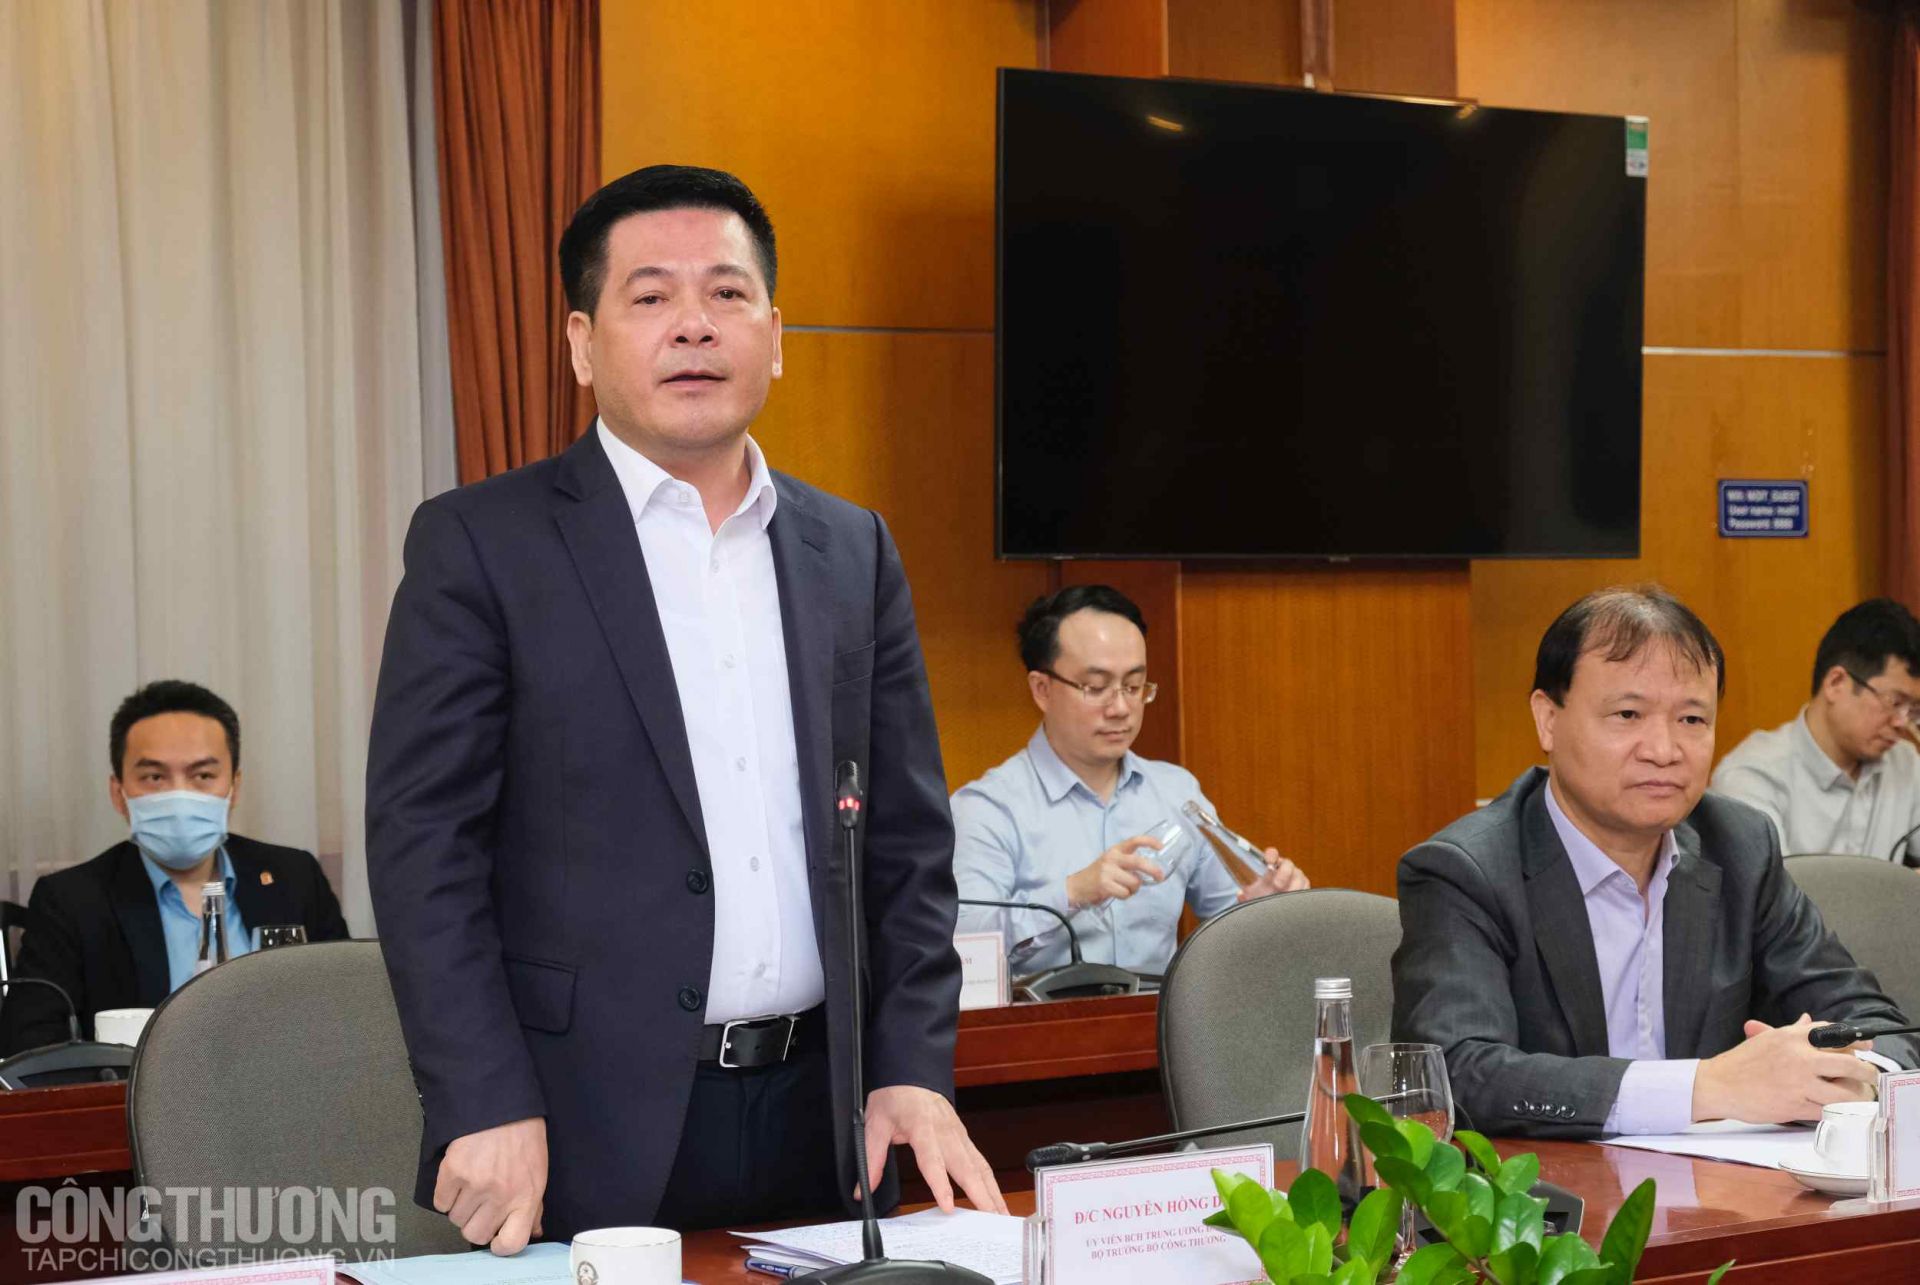 Bộ trưởng Bộ Công Thương Nguyễn Hồng Diên trân trọng những hỗ trợ đắc lực của các Đại sứ, Cơ quan đại diện Việt Nam tại nước ngoài trong các hoạt động ngoại giao kinh tế